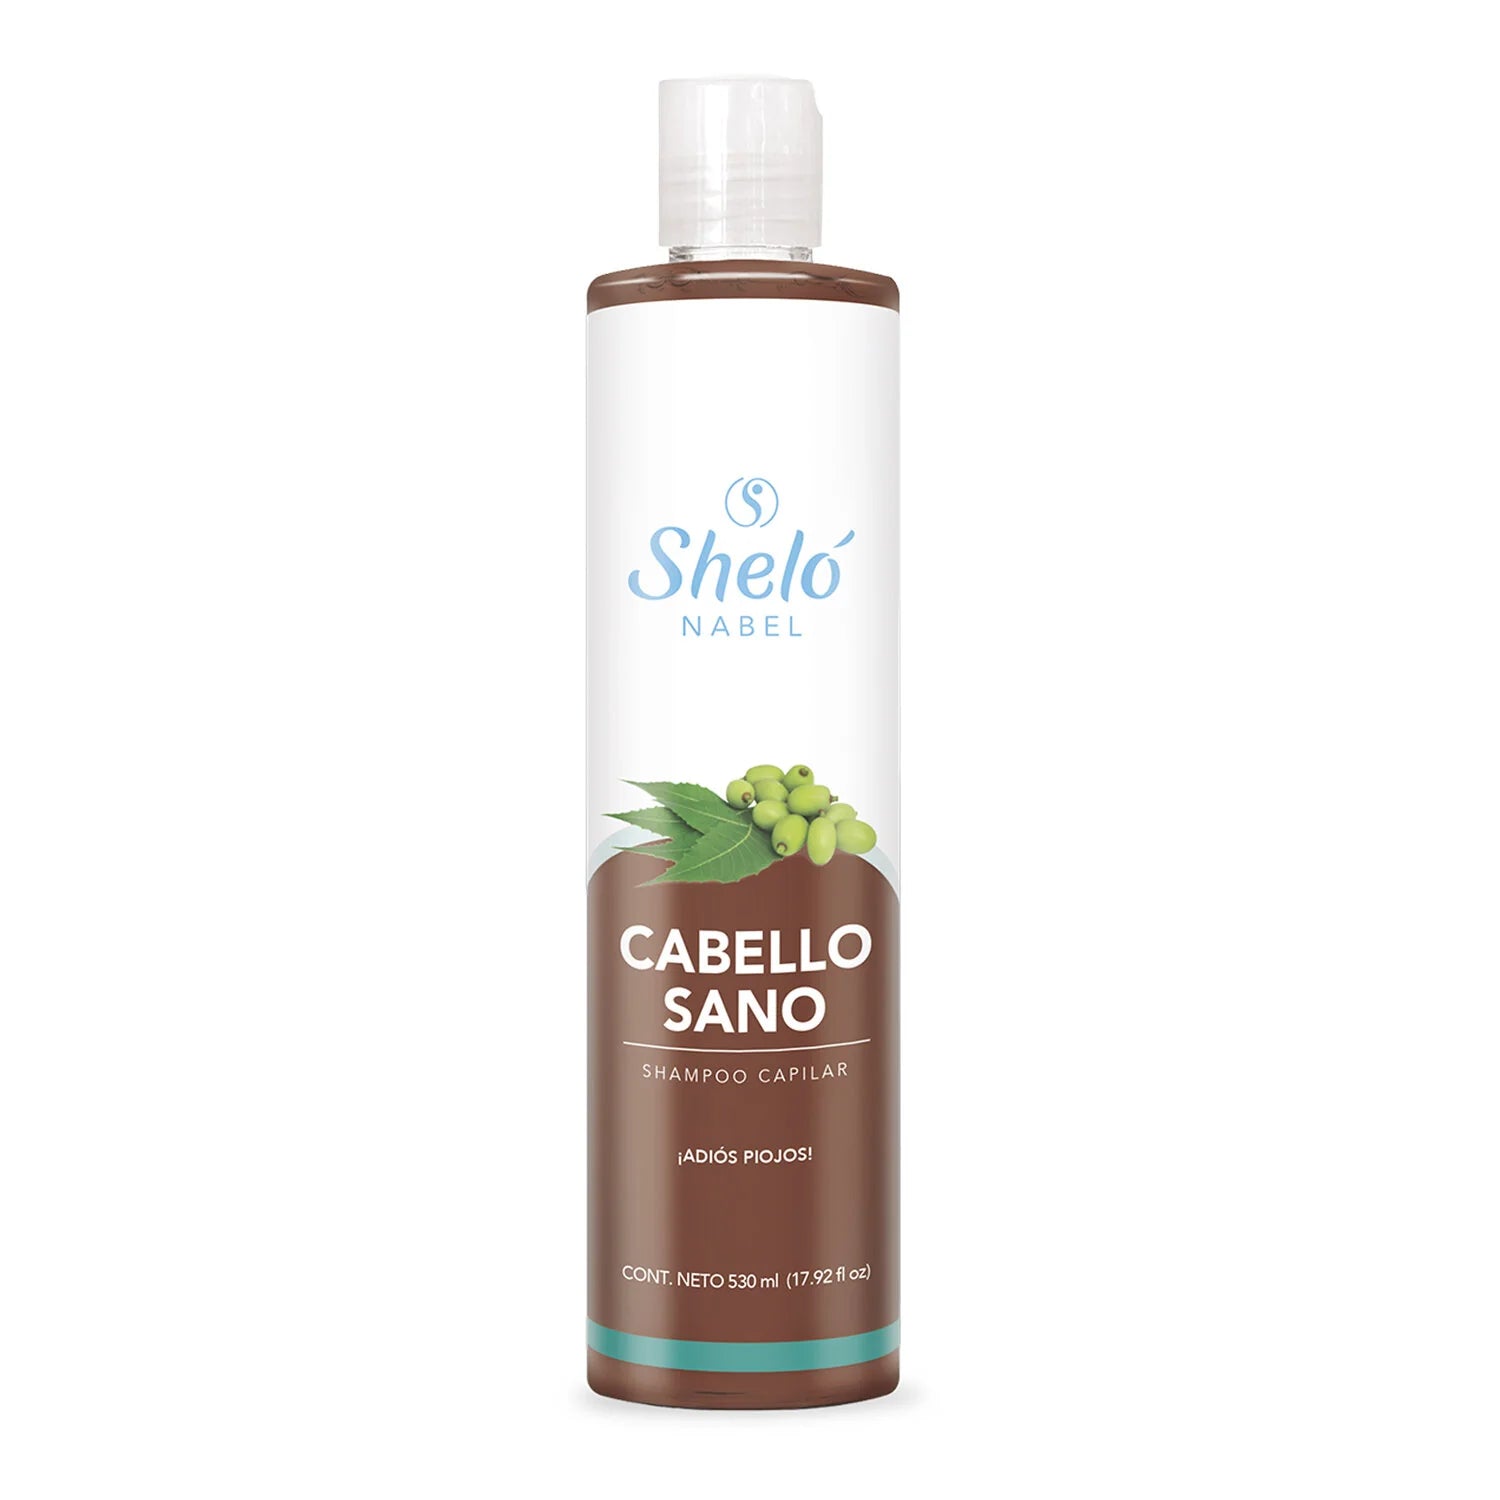 Shelo Nabel Healthy hair shampoo -  Ayuda a mantener el cabello libre de piojos, proporcionando brillo y sedosidad. 530 Ml 17.92 fl Oz.